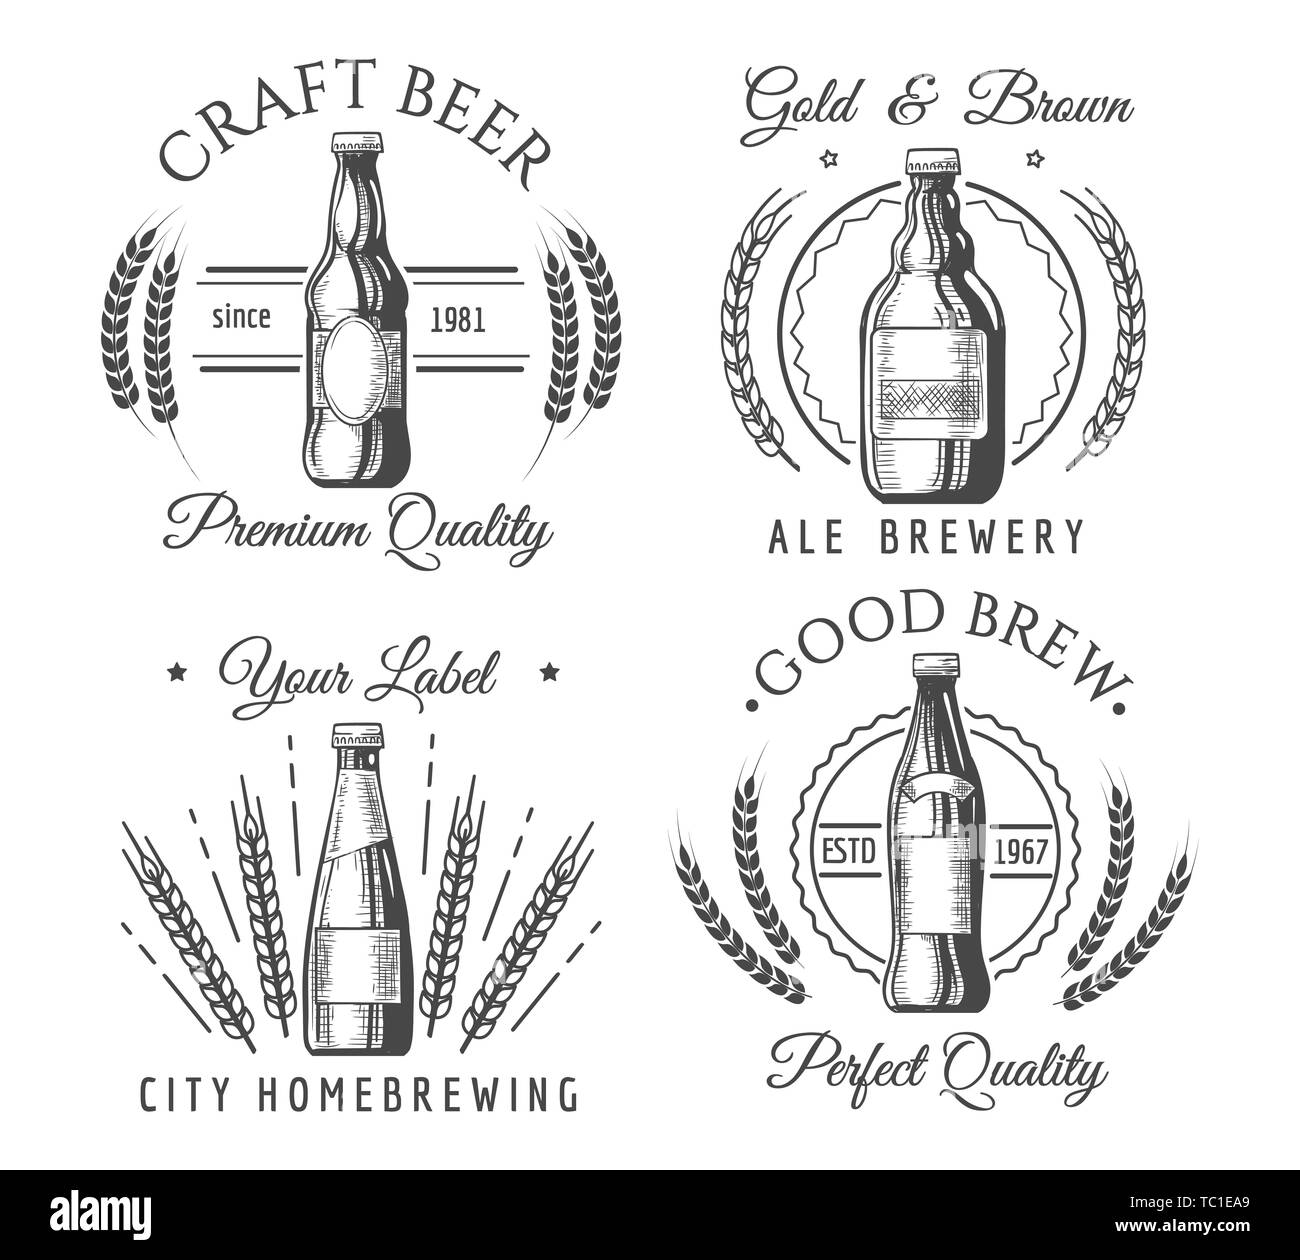 https://c8.alamy.com/compde/tc1ea9/handwerkliche-handwerk-bier-etiketten-handarbeit-handarbeit-trinken-symbole-vektor-ale-bier-flasche-logo-originale-getranke-abzeichen-vintage-hand-gemacht-grafiken-tc1ea9.jpg